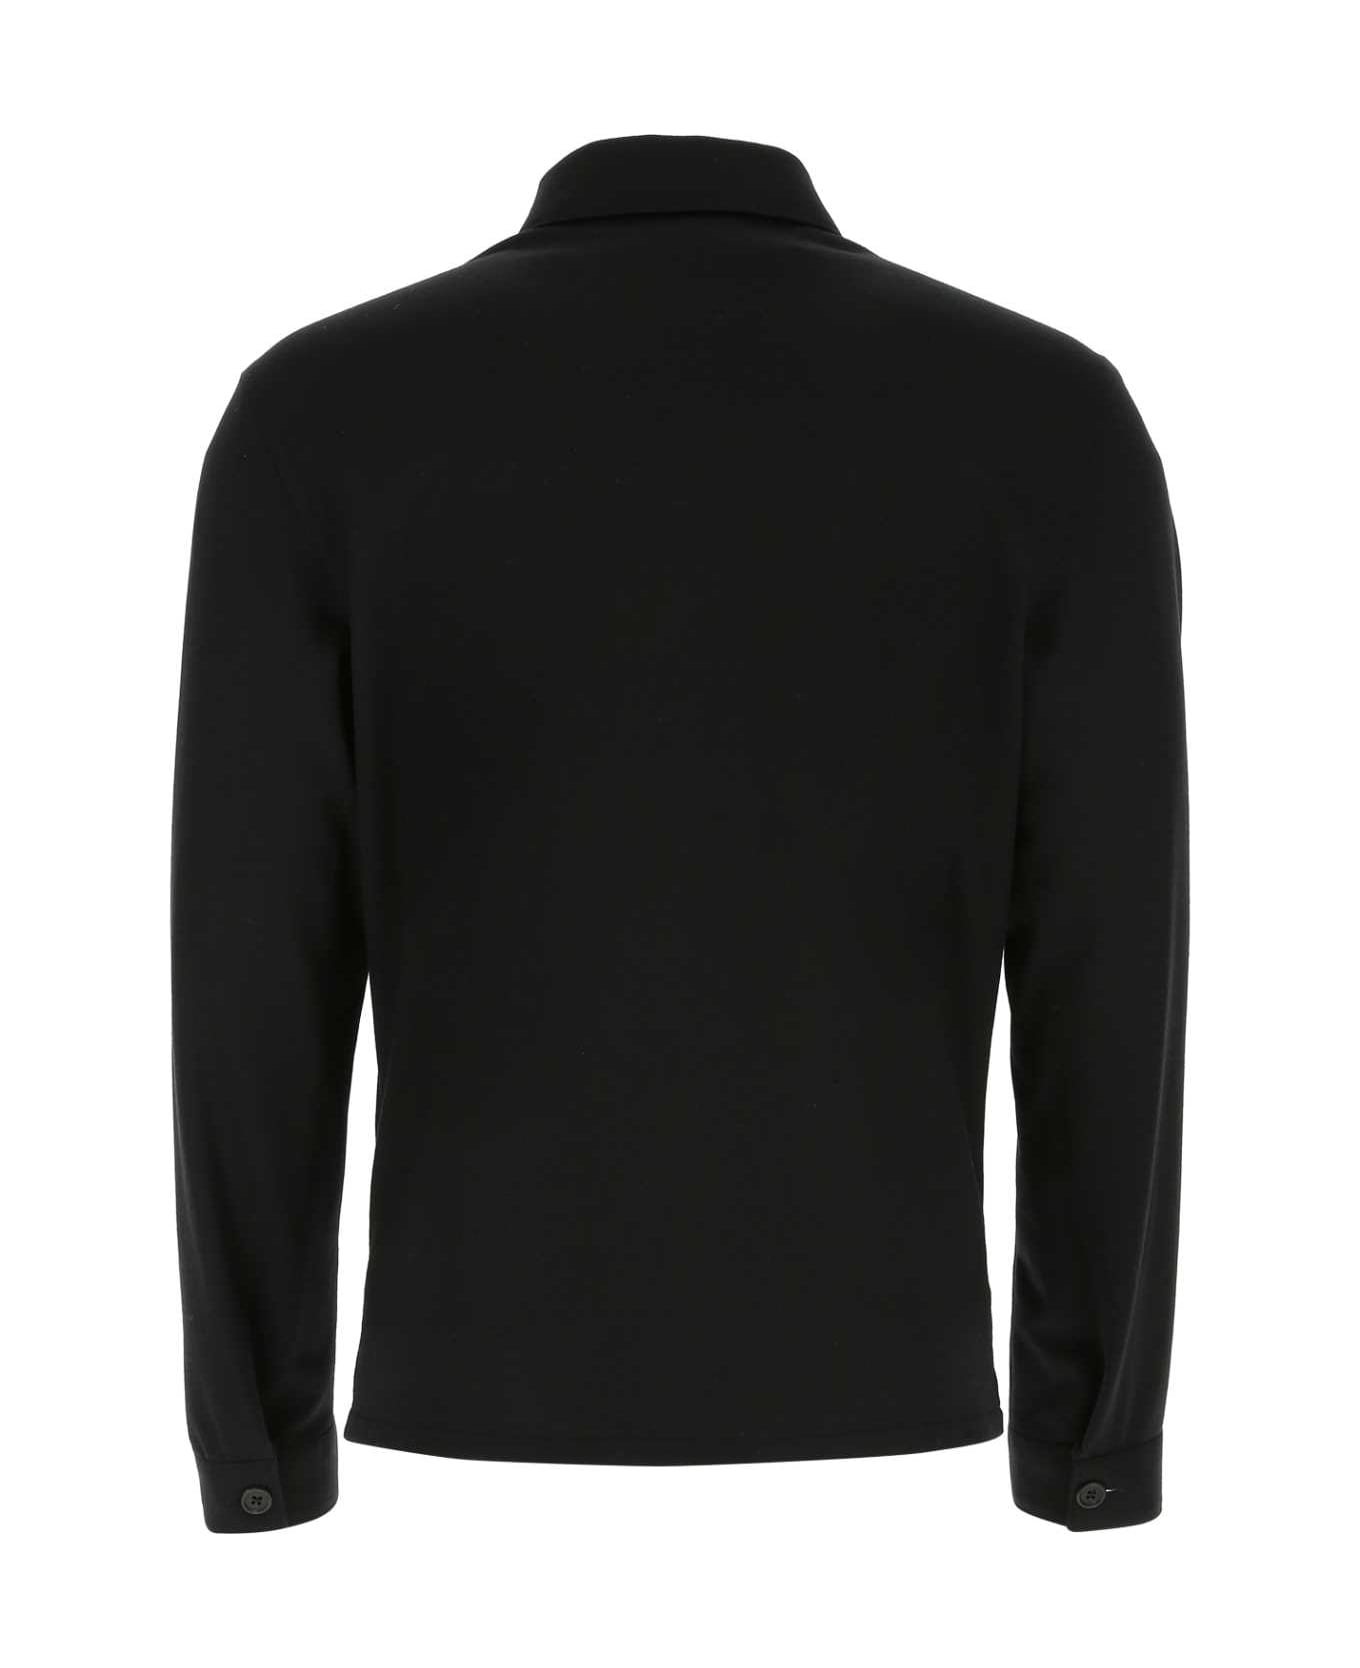 Prada Black Wool And Cashmere Shirt - NERO